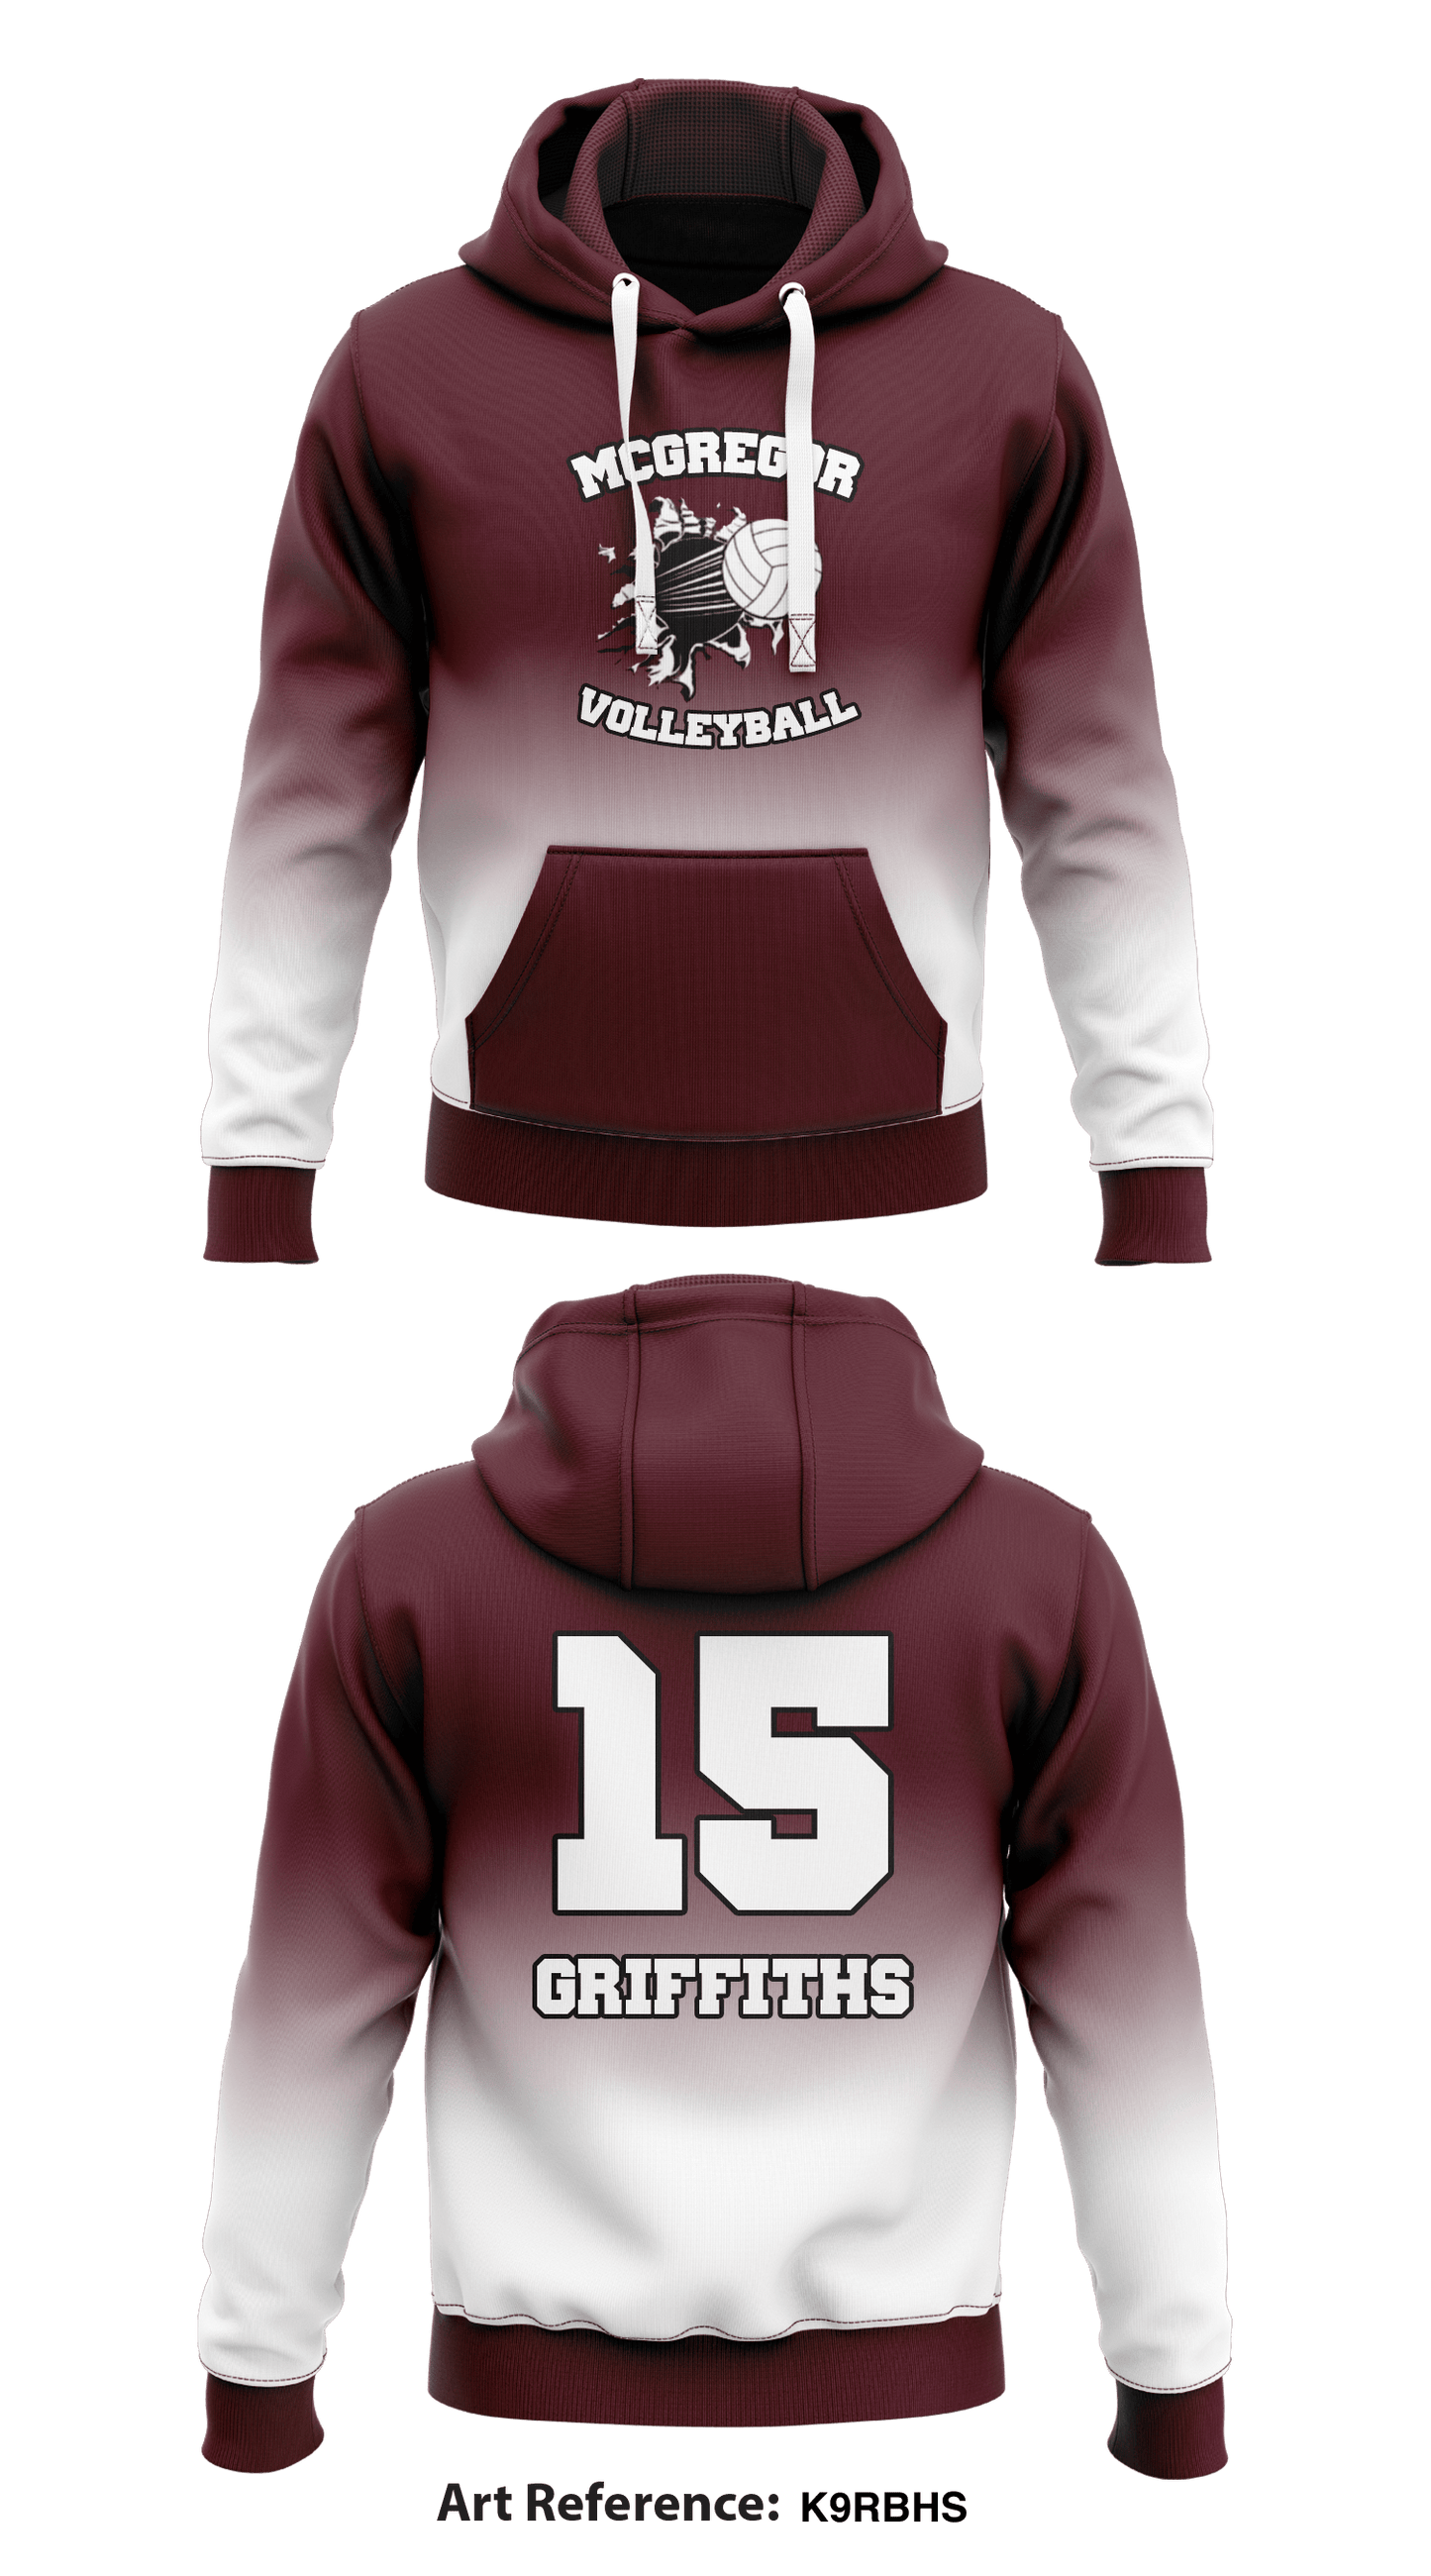 McGregor Volleyball  Store 1  Core Men's Hooded Performance Sweatshirt - K9rbhs